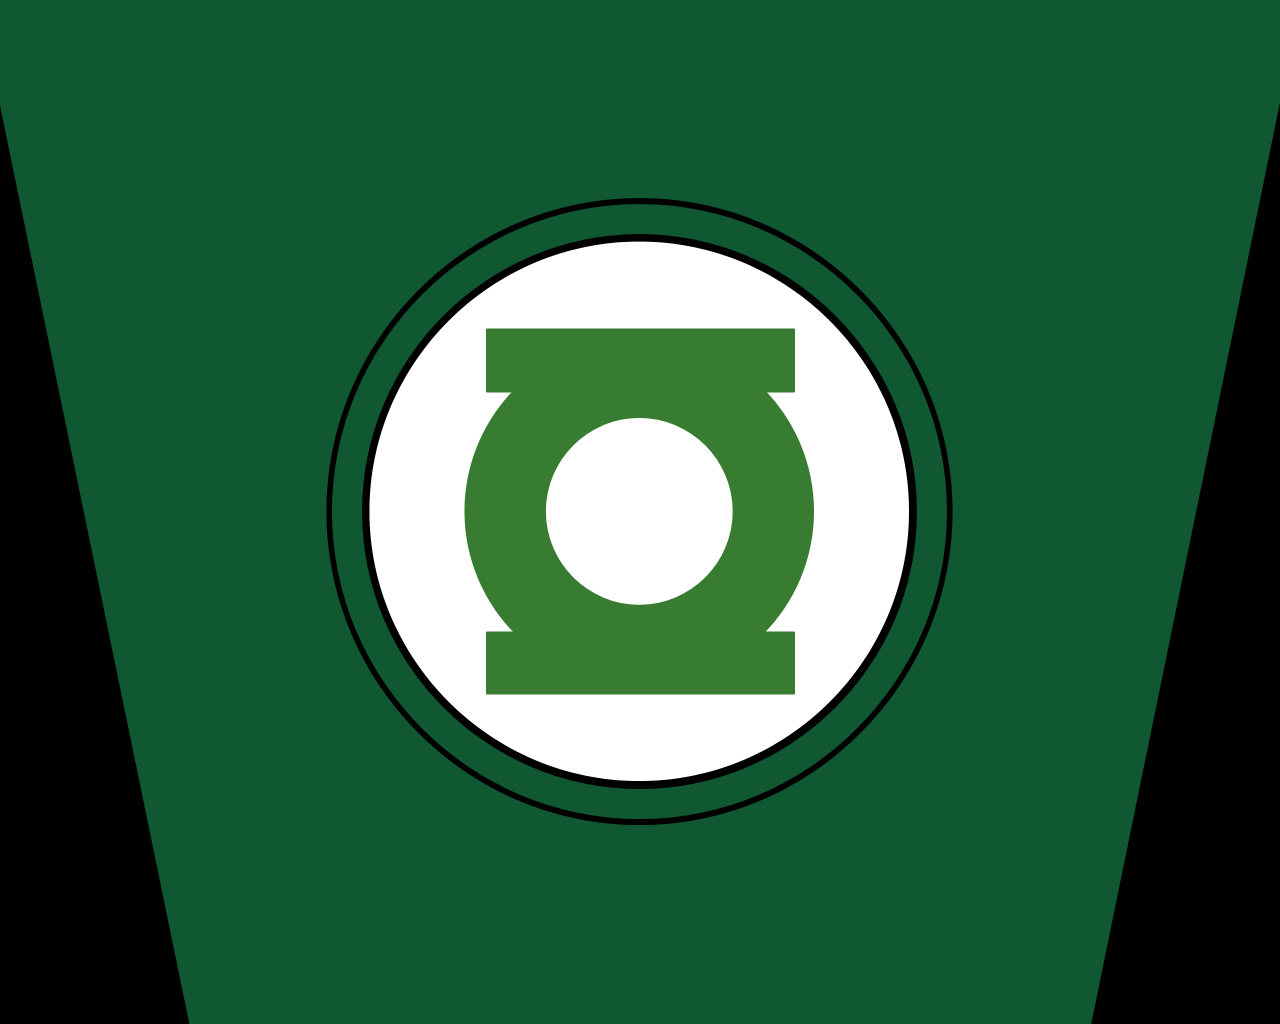 Logos For > Green Lantern Logo iPhone Wallpaper